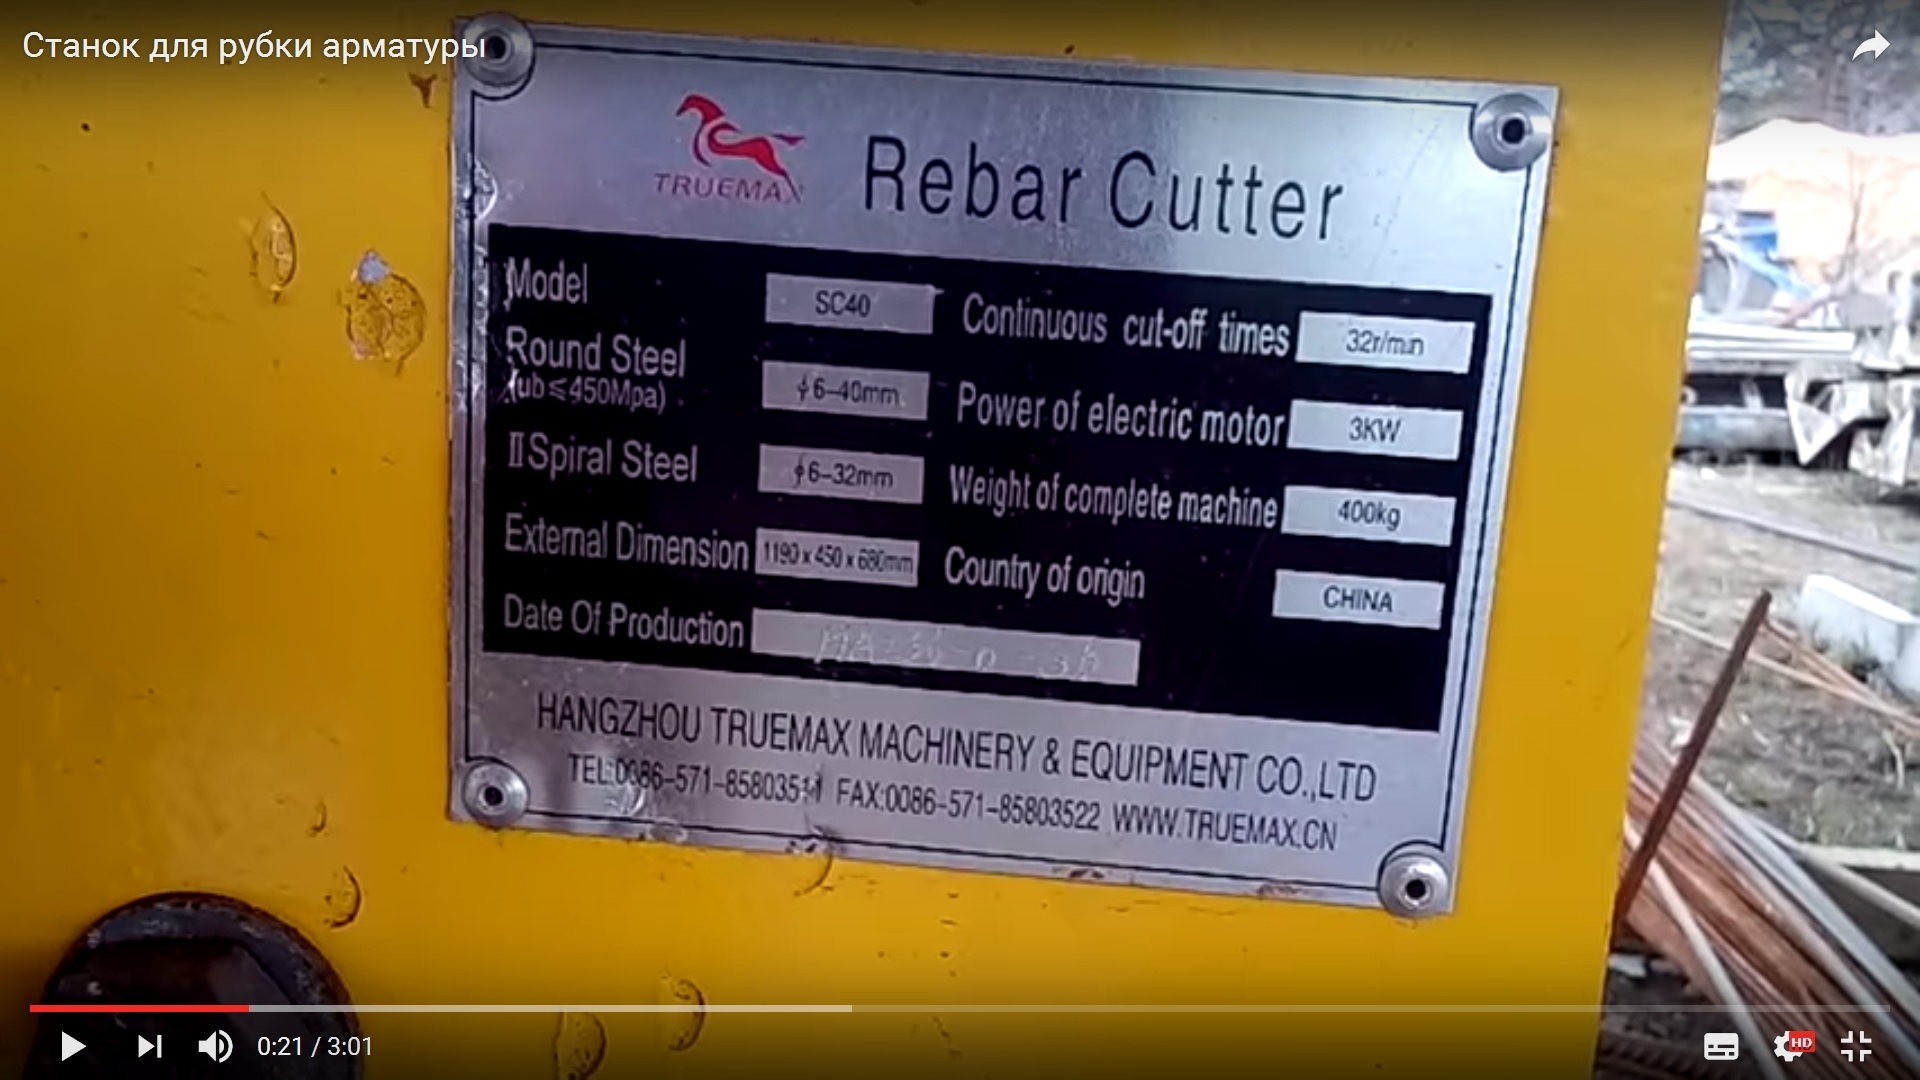 Шильдик станка для рубки арматуры Rebar Cutter Китай China, все видно